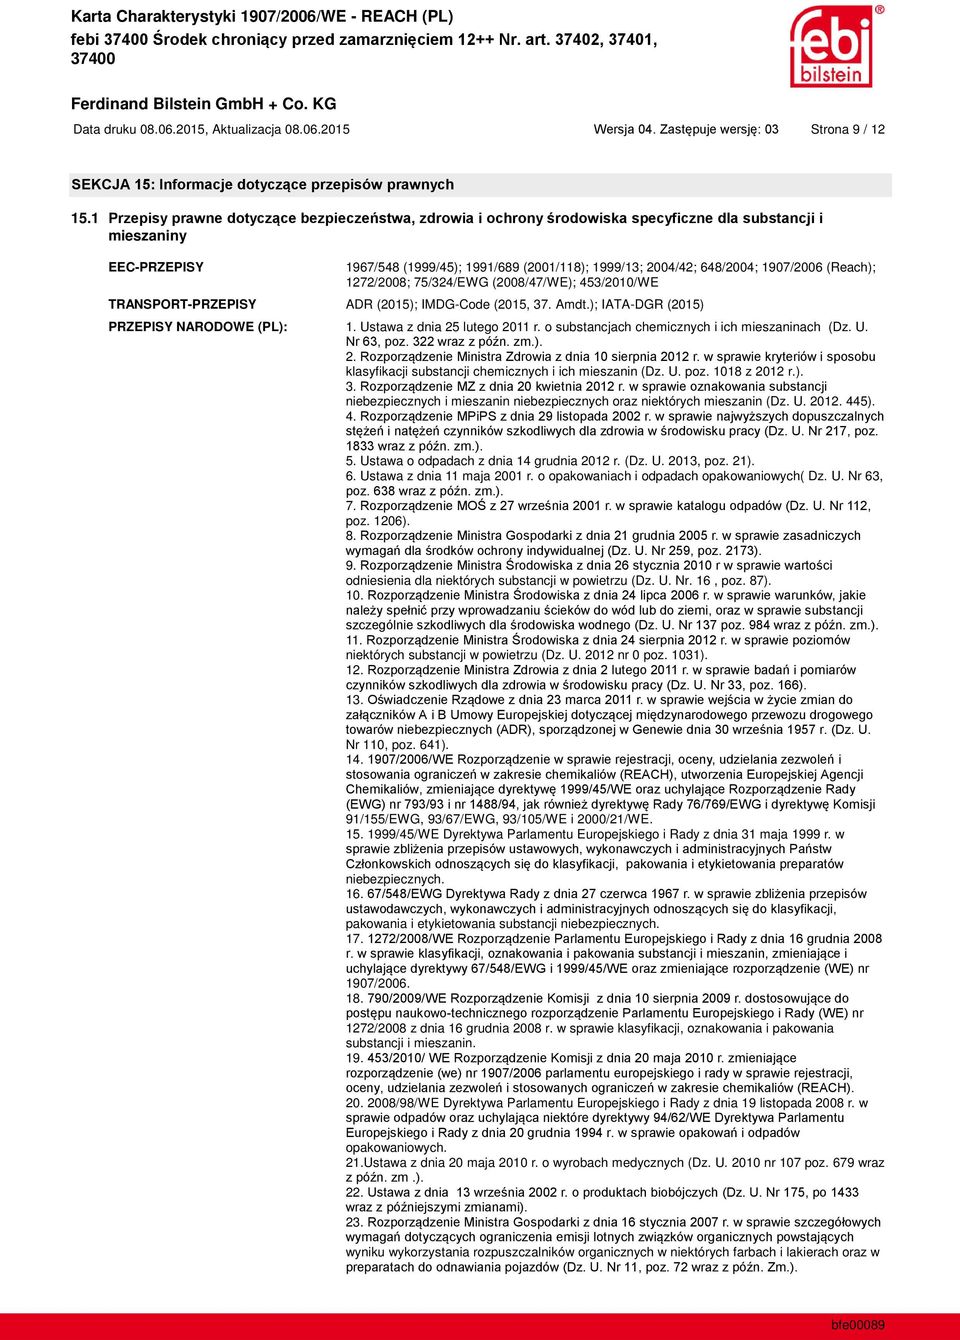 IMDG-Code (2015, 37. Amdt.); IATA-DGR (2015) PRZEPISY NARODOWE (PL): 1. Ustawa z dnia 25 lutego 2011 r. o substancjach chemicznych i ich mieszaninach (Dz. U. 2. klasyfikacji substancji chemicznych i ich mieszanin (Dz.